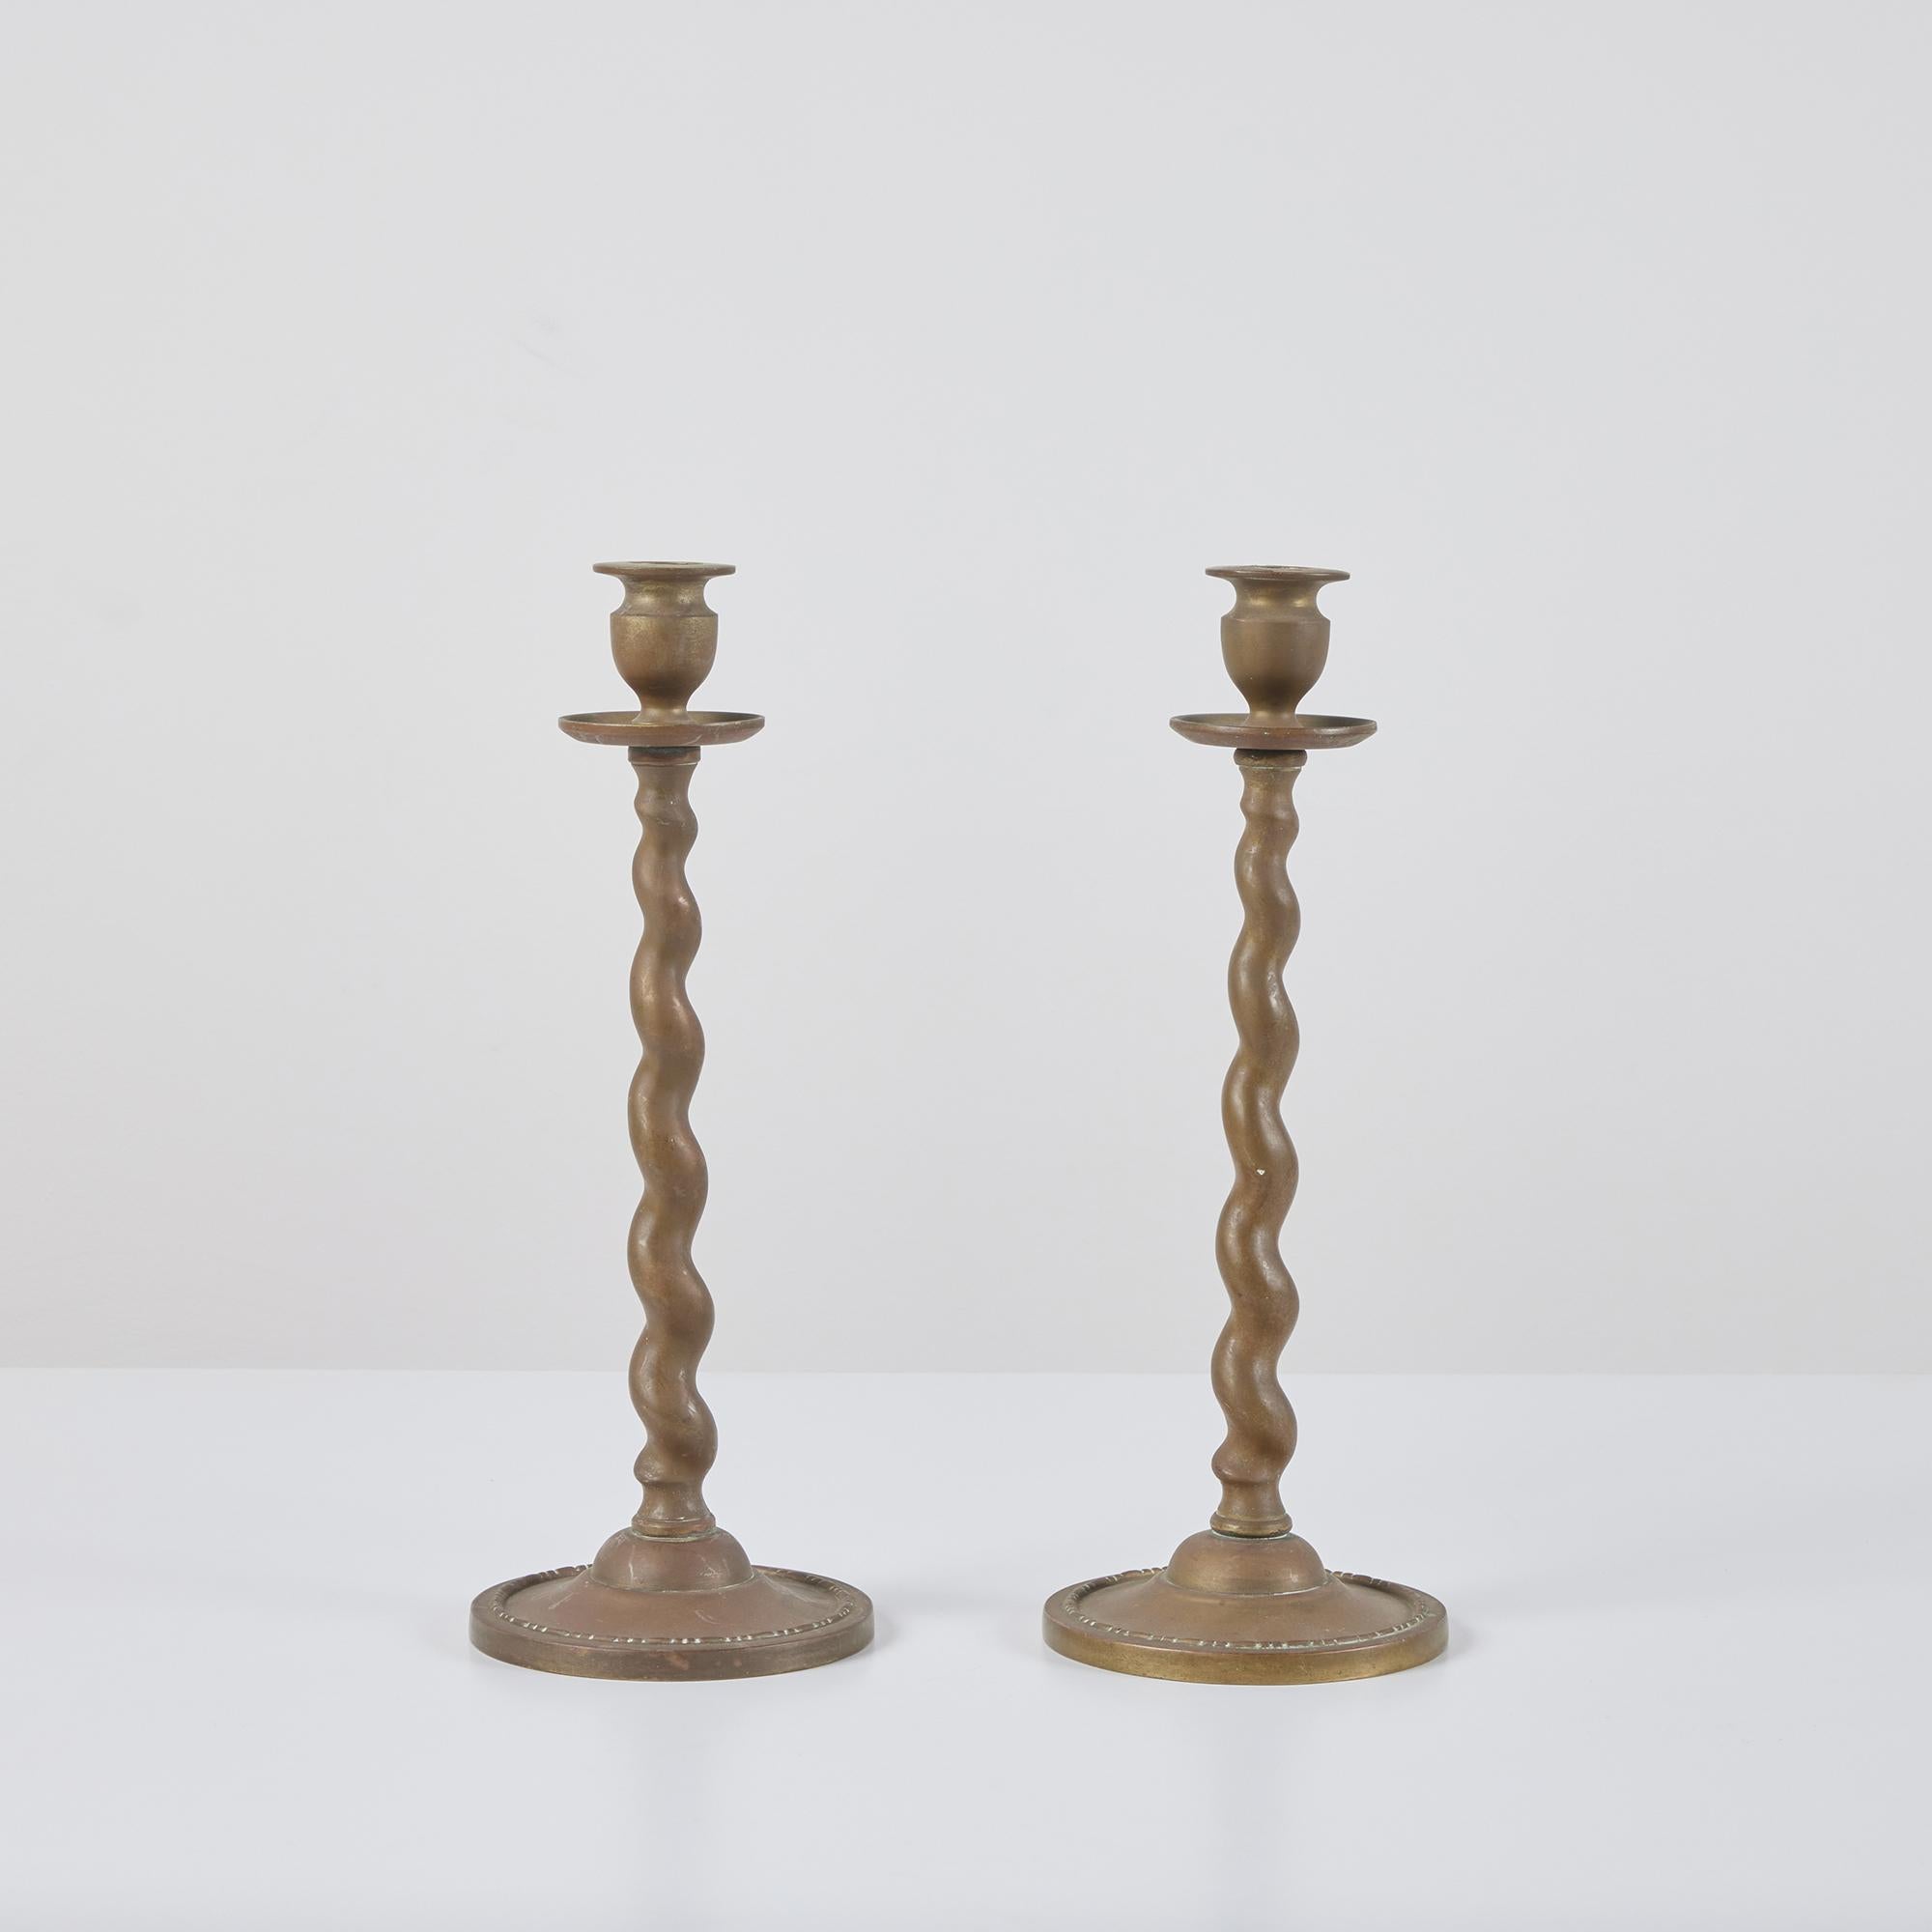 Paar Kerzenständer aus massivem Messing, im Stil der Peerage, England. Das Paar wunderschön patinierter Kerzenständer hat einen Gerstenkornstiel und einen runden, gestuften Sockel.

Abmessungen
5,25